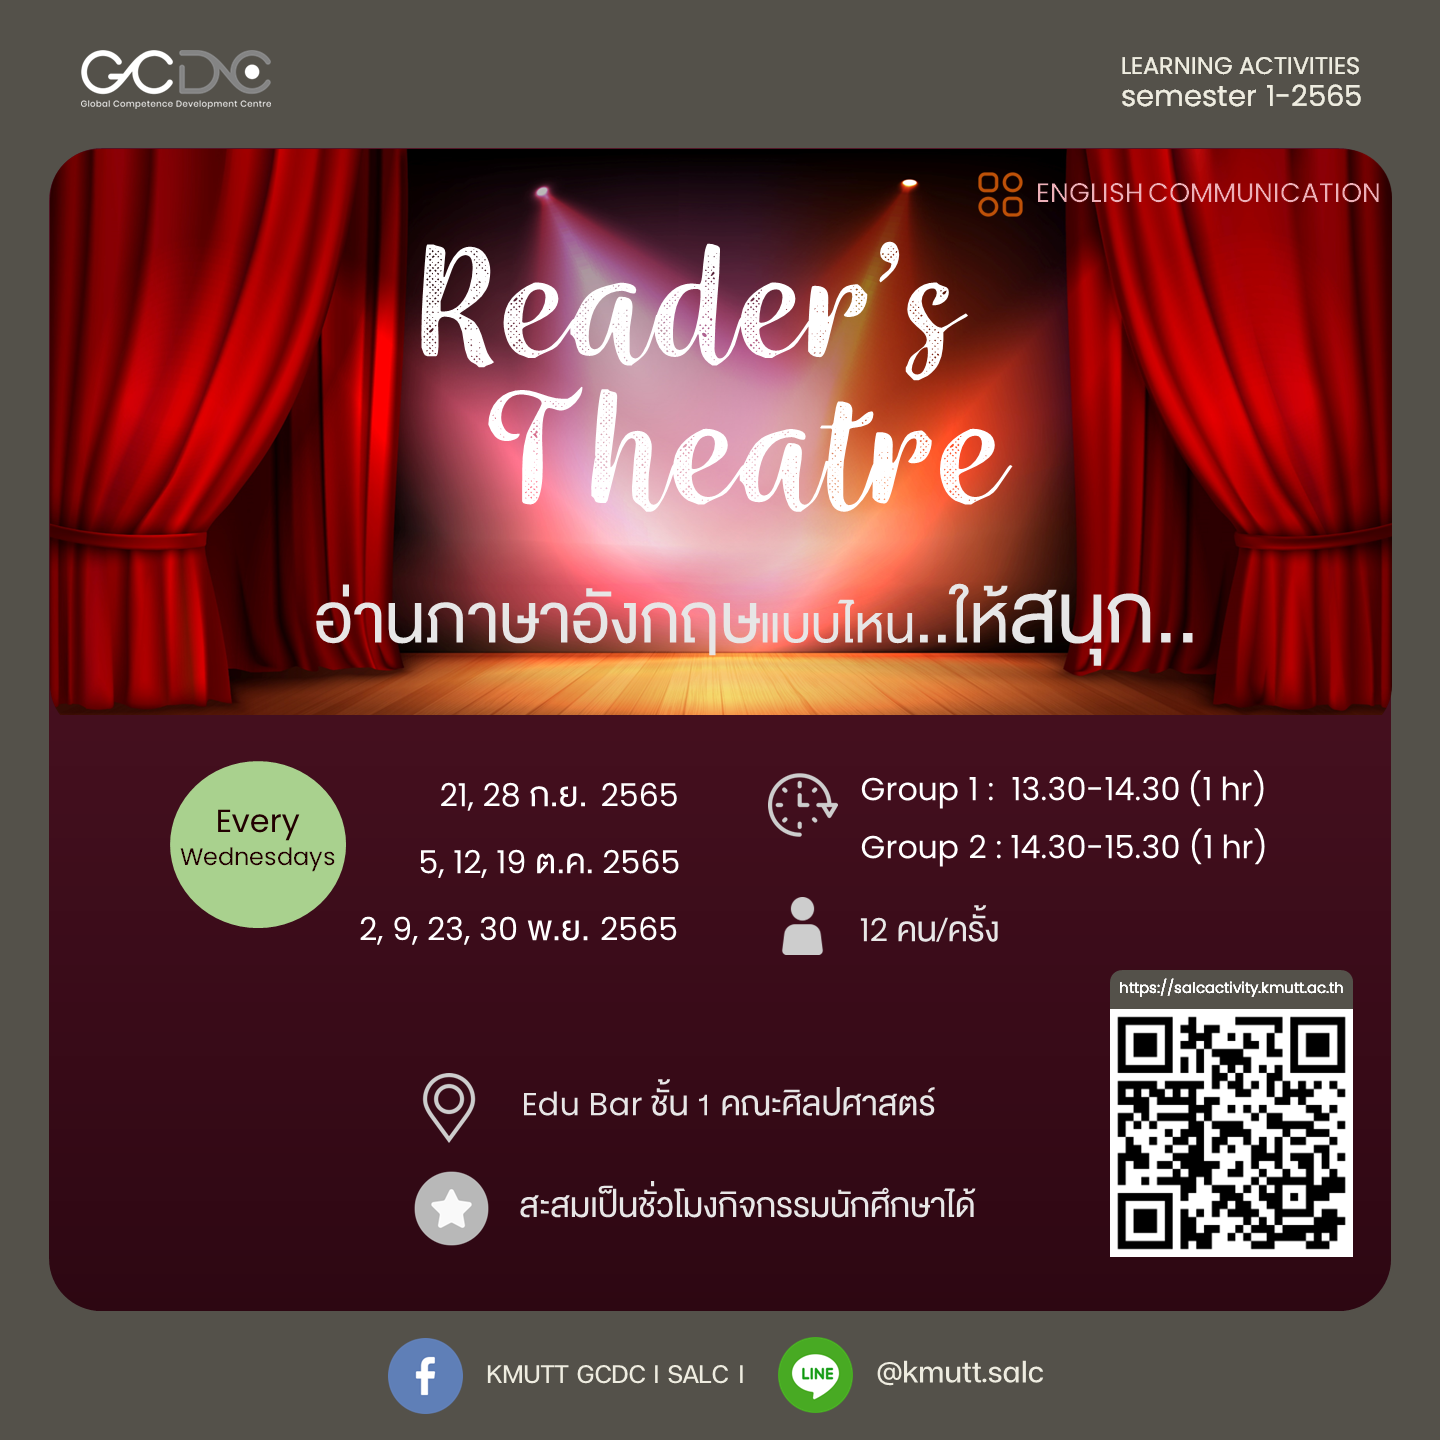 กิจกรรม : Reader’s Theatre